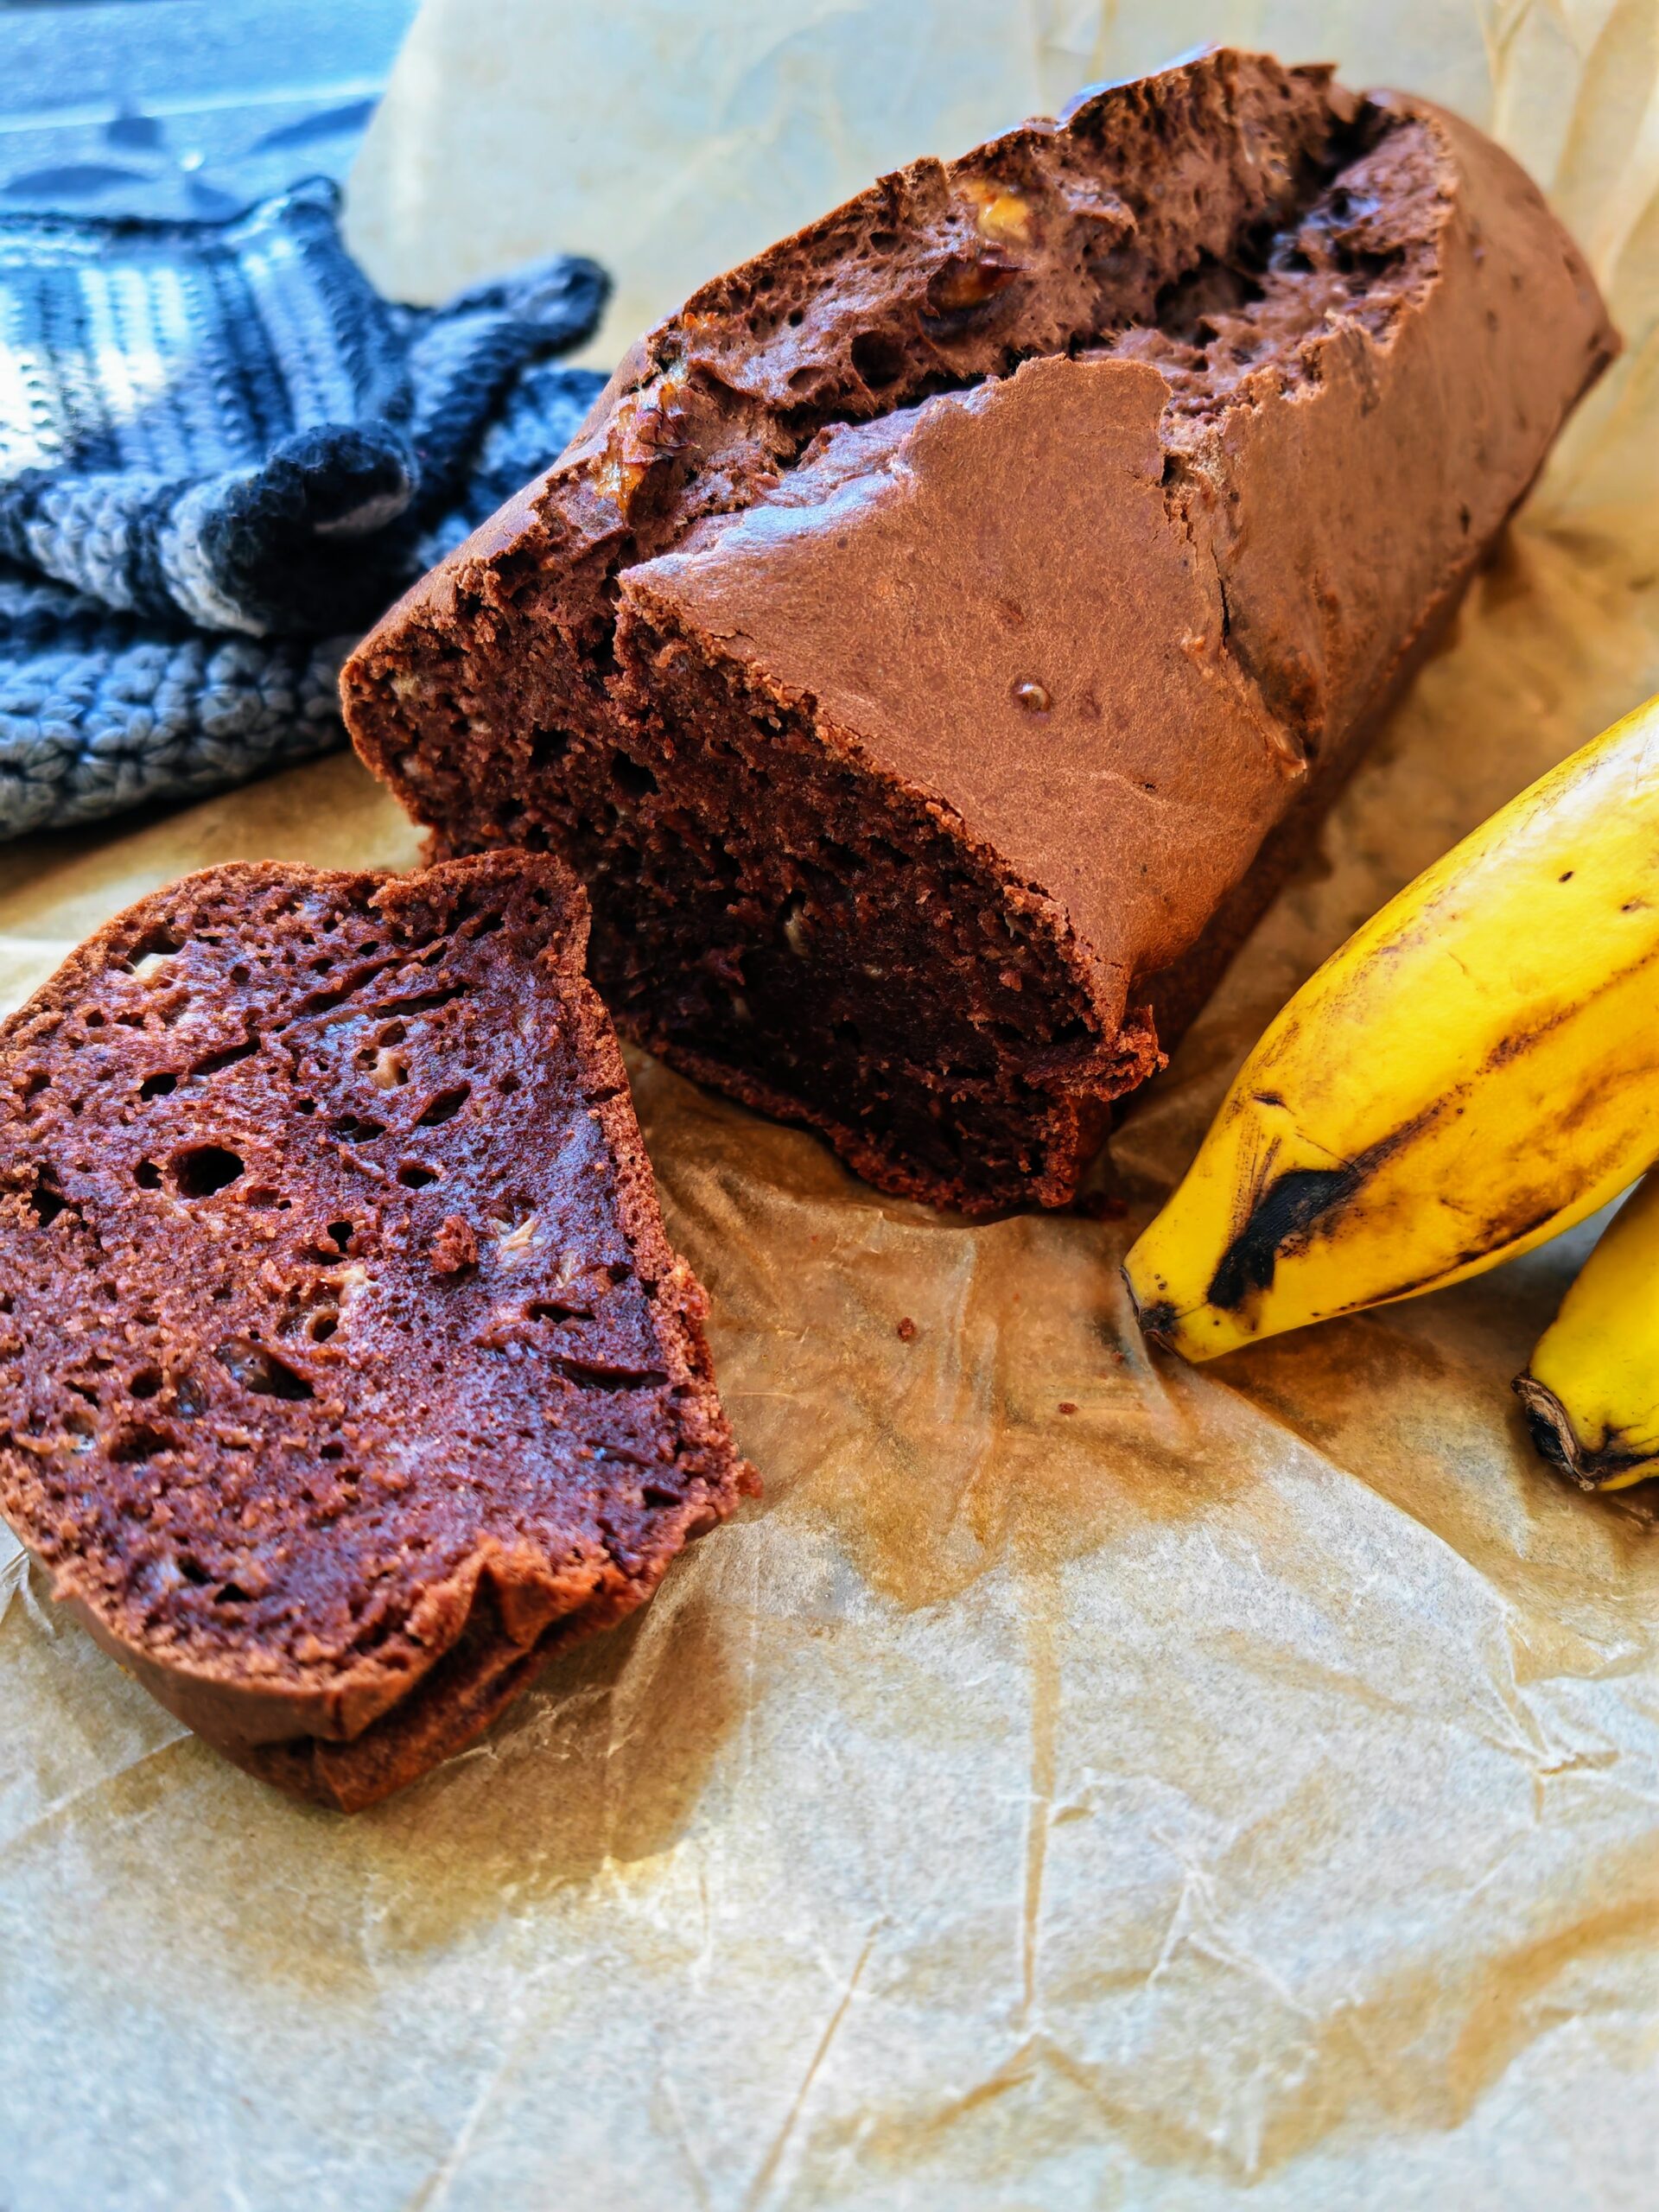 Saftiger Bananenkuchen mit Schokolade. Julie zeigt dir im Backblog Cappotella ein veganes Rezept für diesen tollen Kuchen. Nachbacken und genießen! #kuchen #bananenbrot #bananenkuchen #rezept #veganbacken